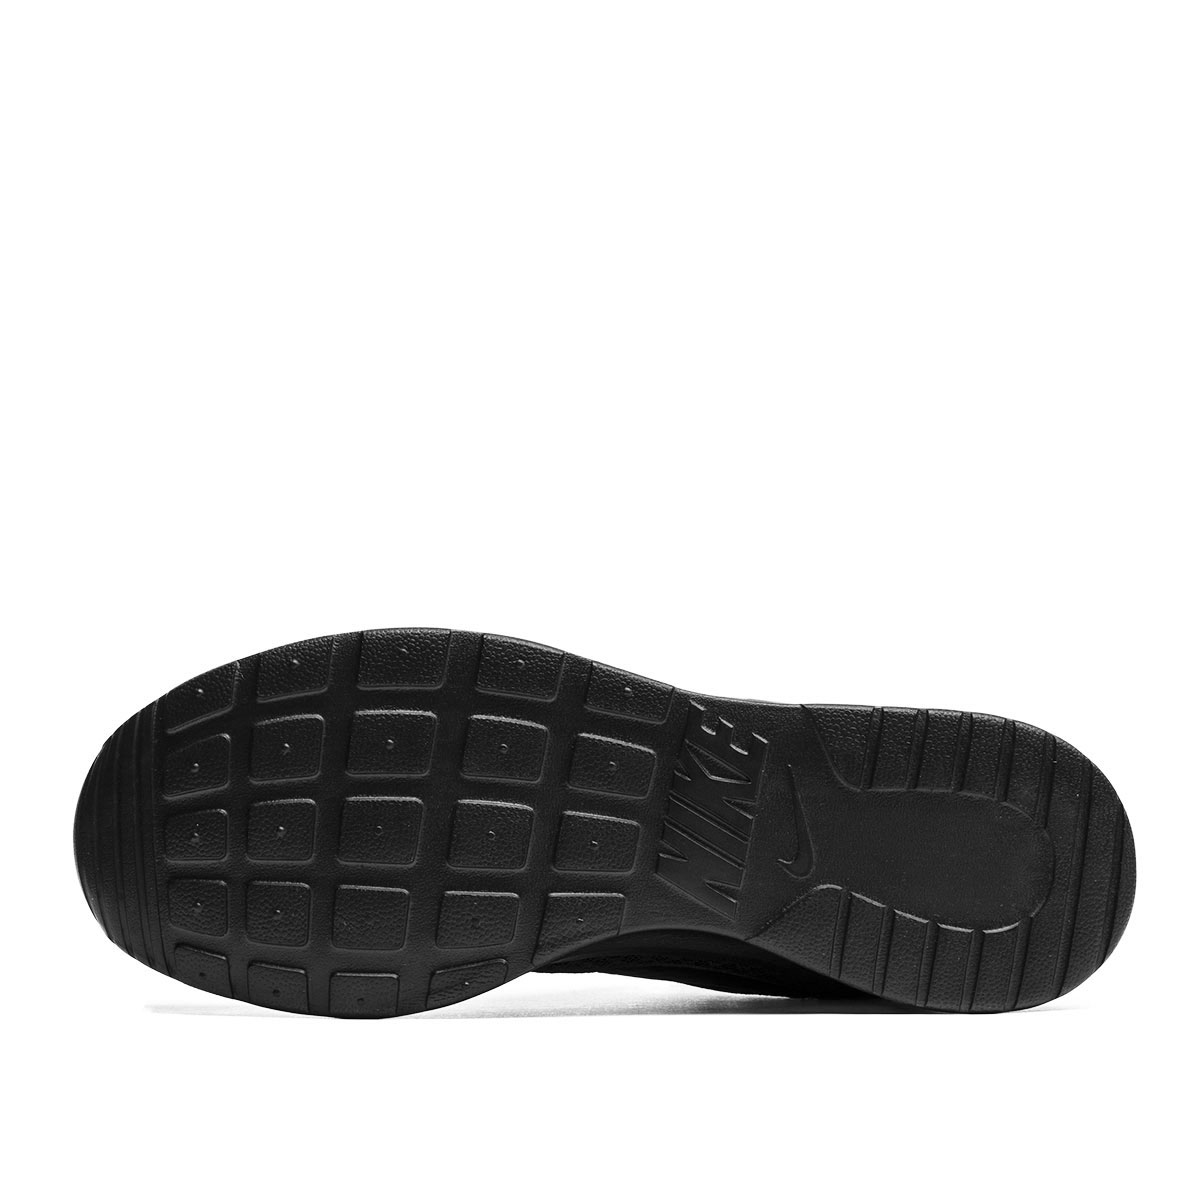 Nike Tanjun  812654-001